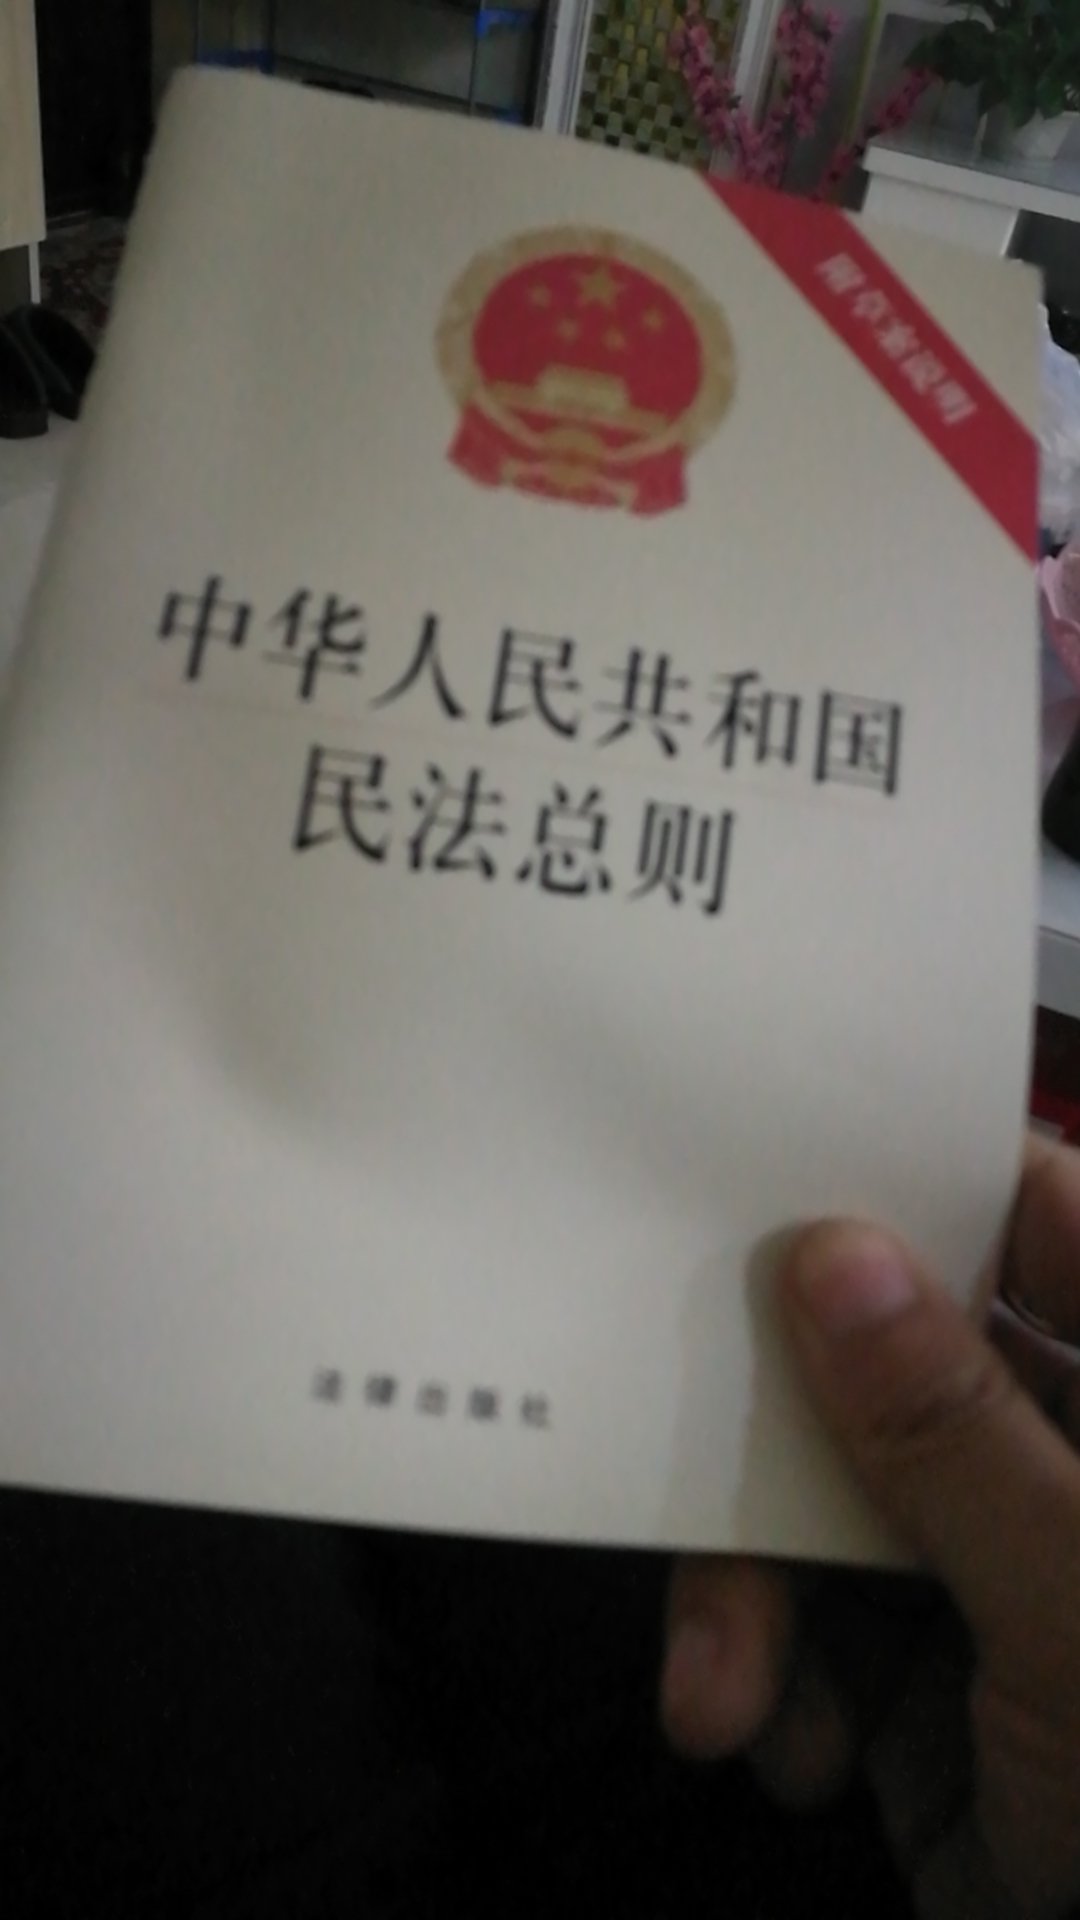 中华人民共和国民法总则收到了，还不错，多读法律，多学习知识，学无止境。不错的，蛮好。